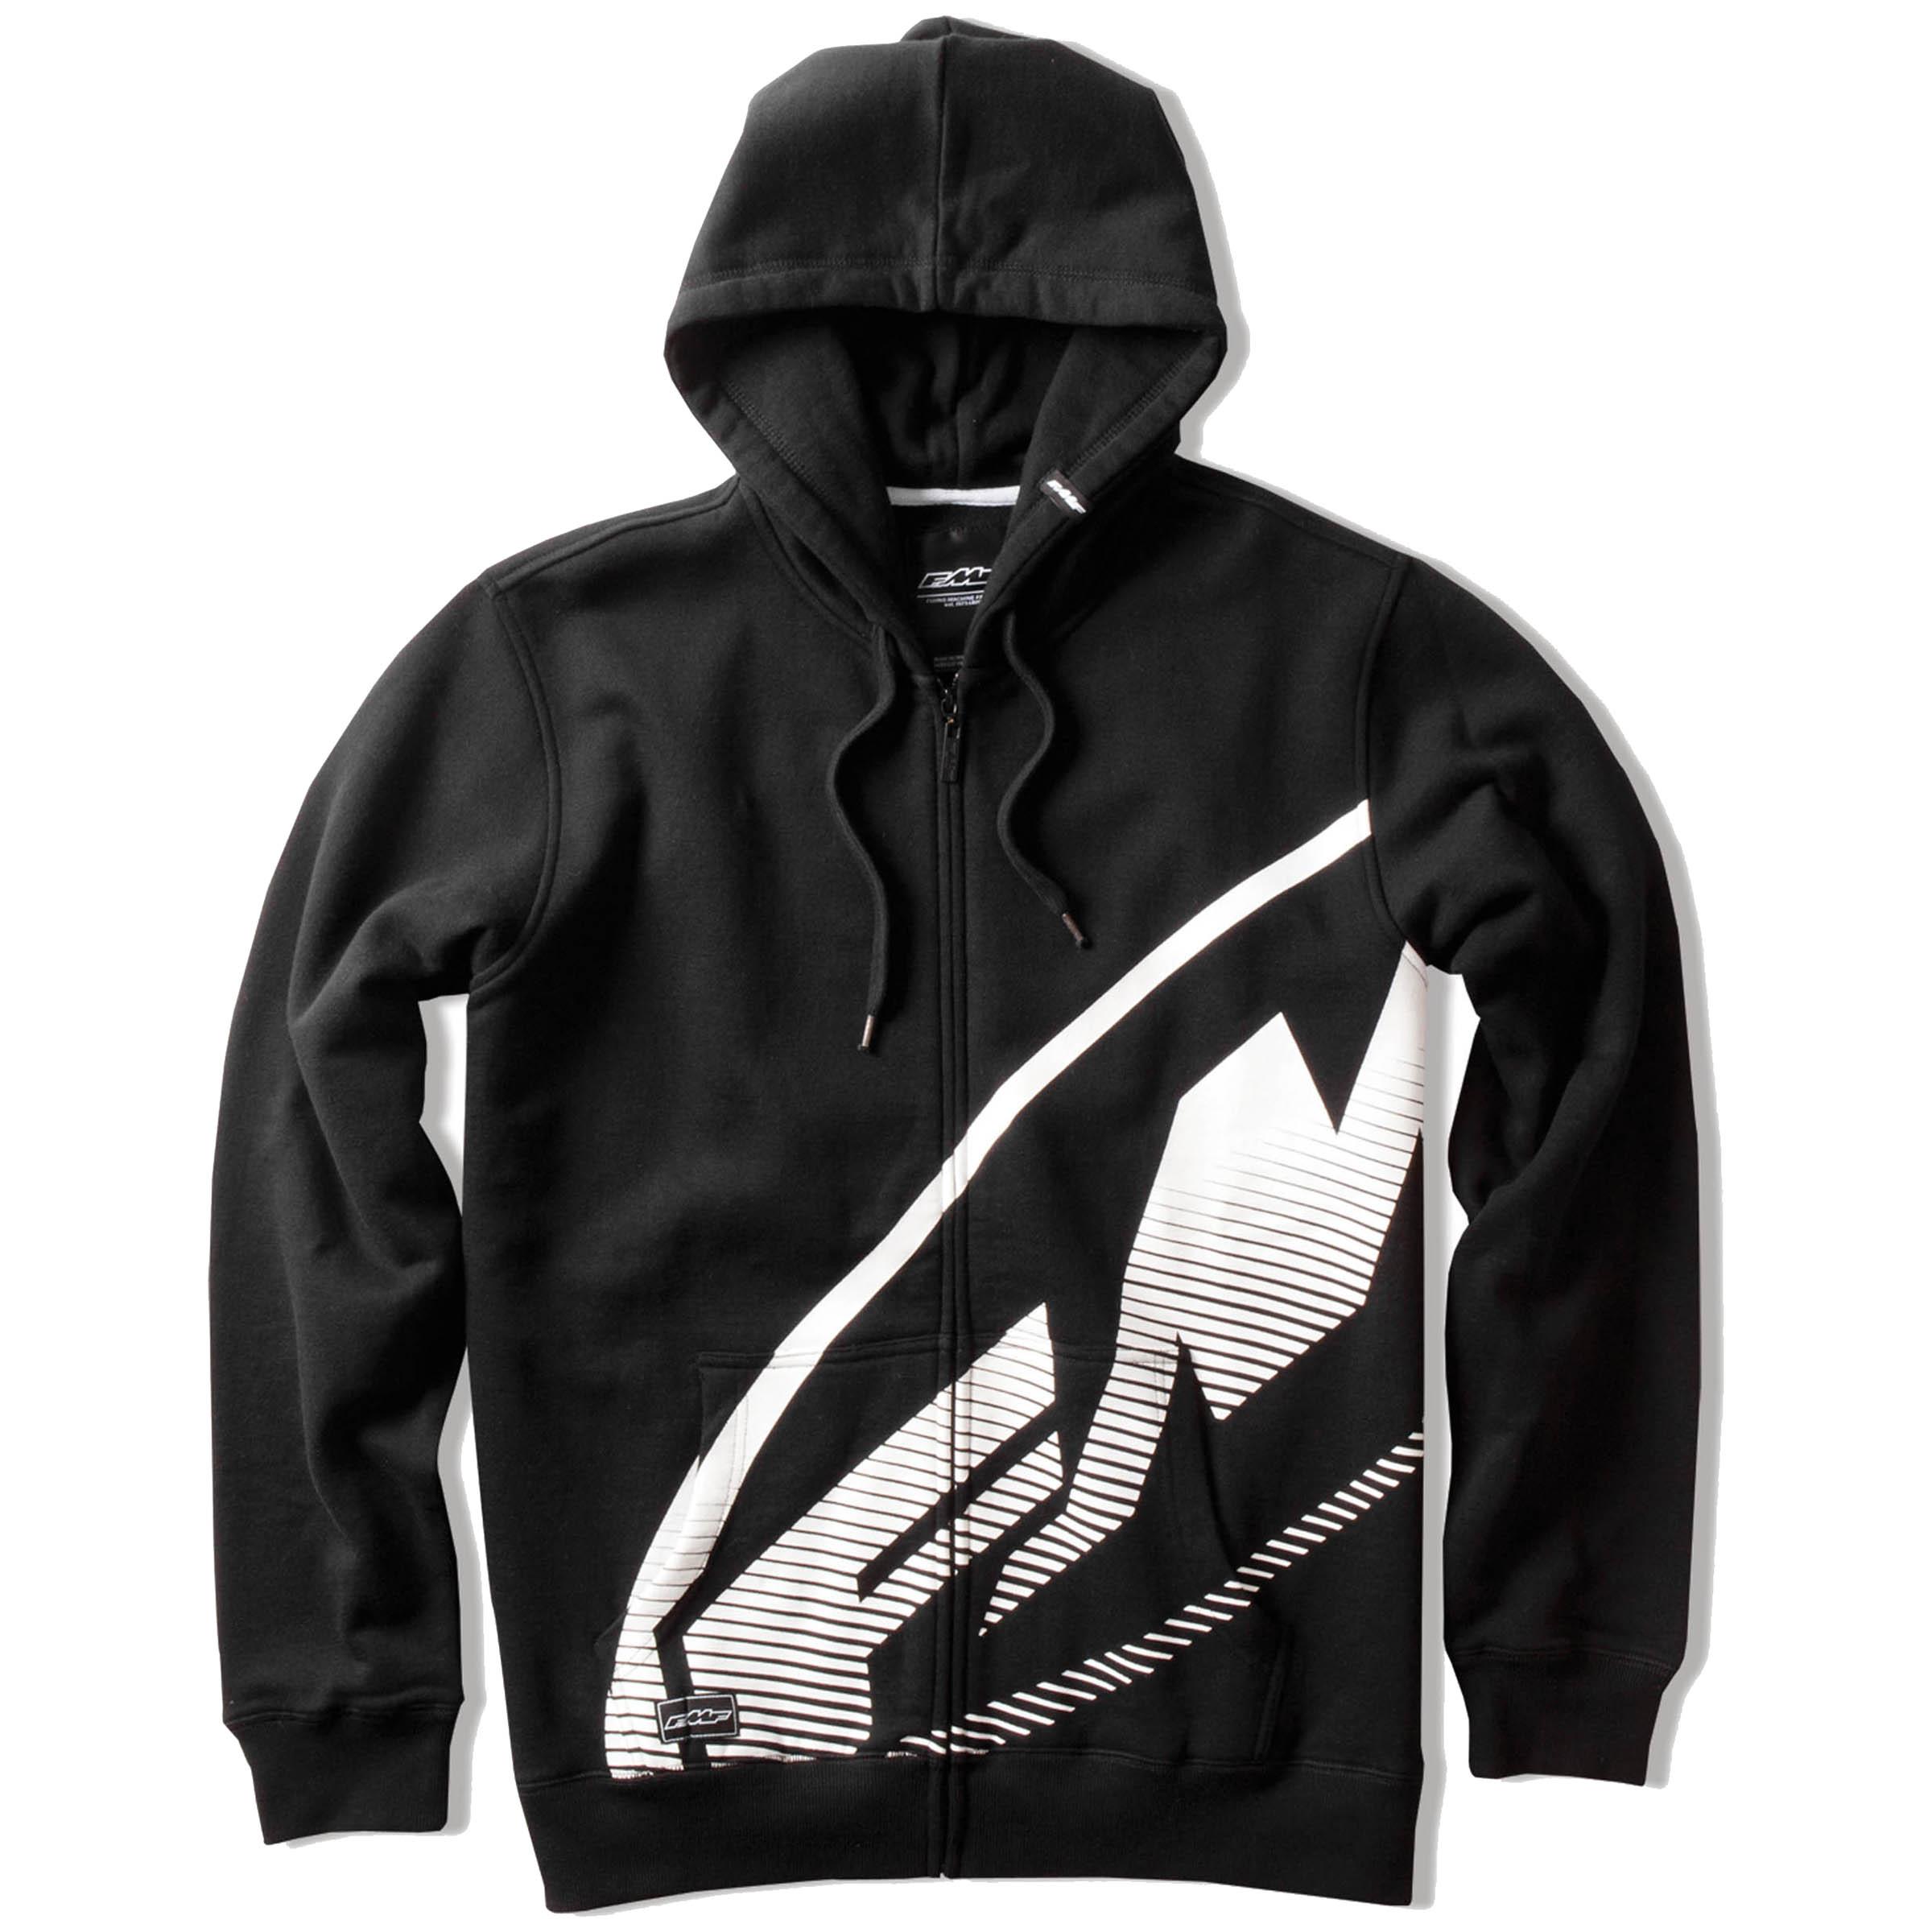 Fmf apparel blaster zip-up hoodie motorcycle sweatshirts